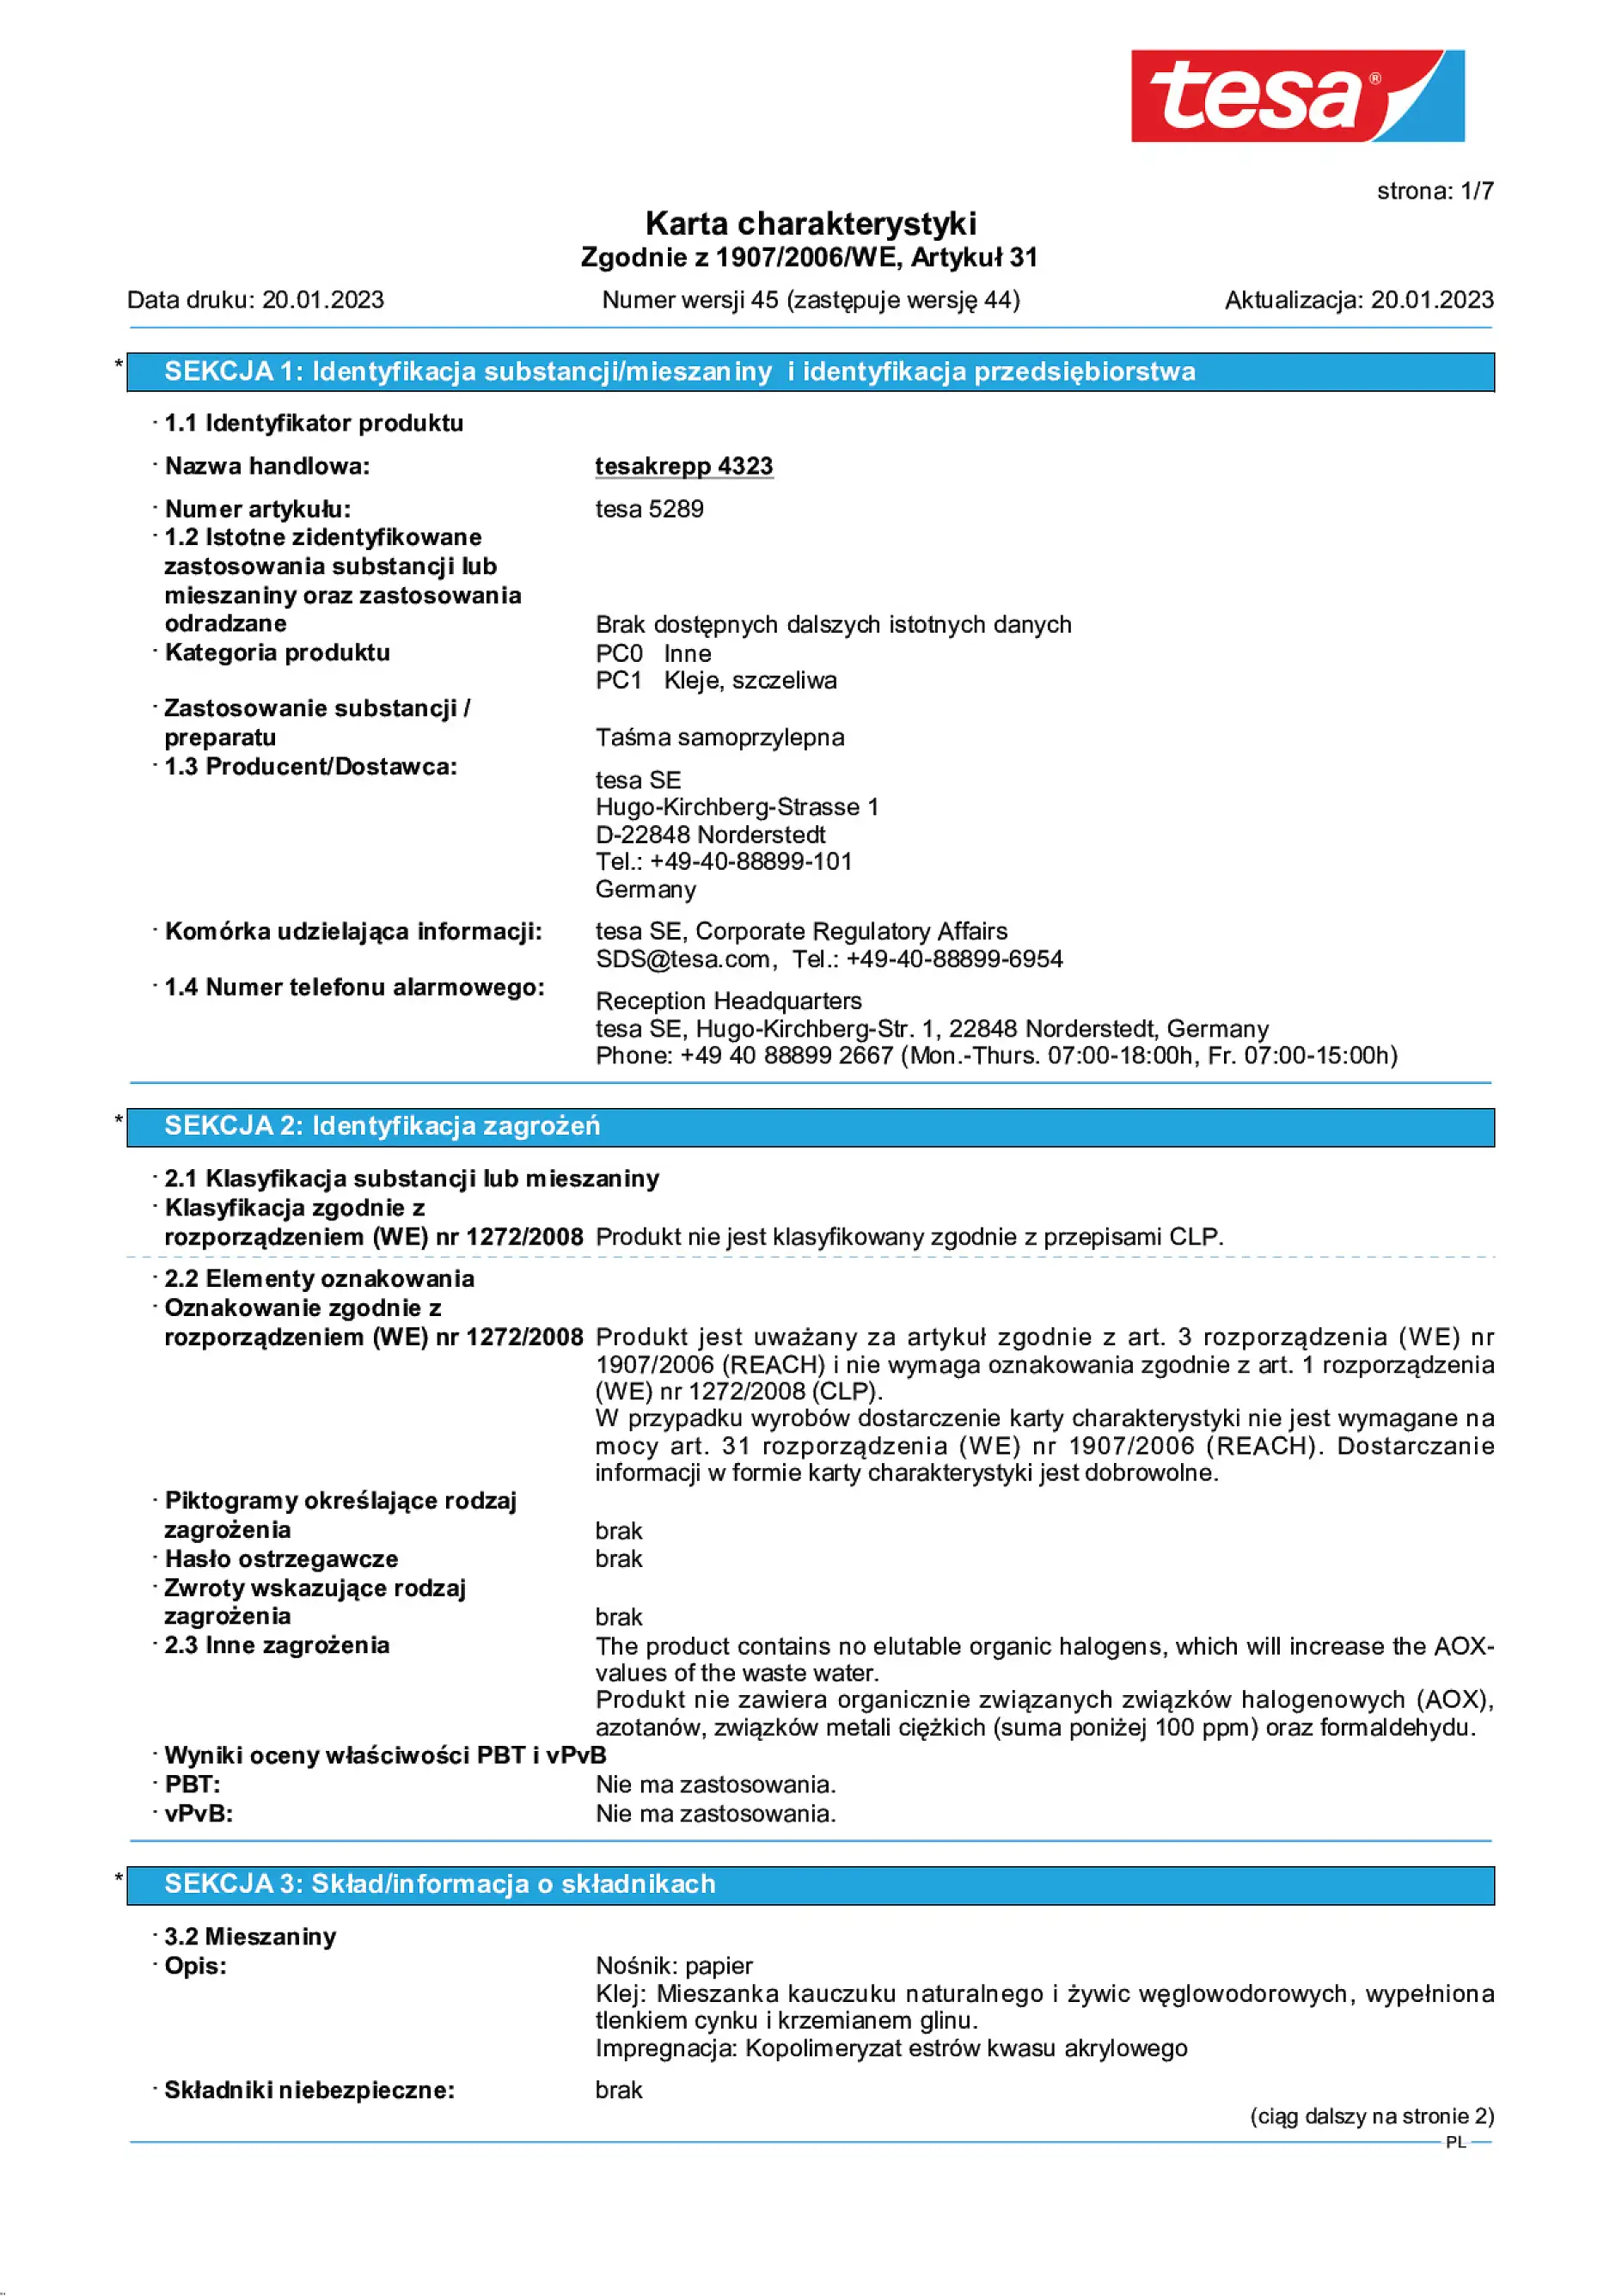 Safety data sheet_tesa® 04323_pl-PL_v45